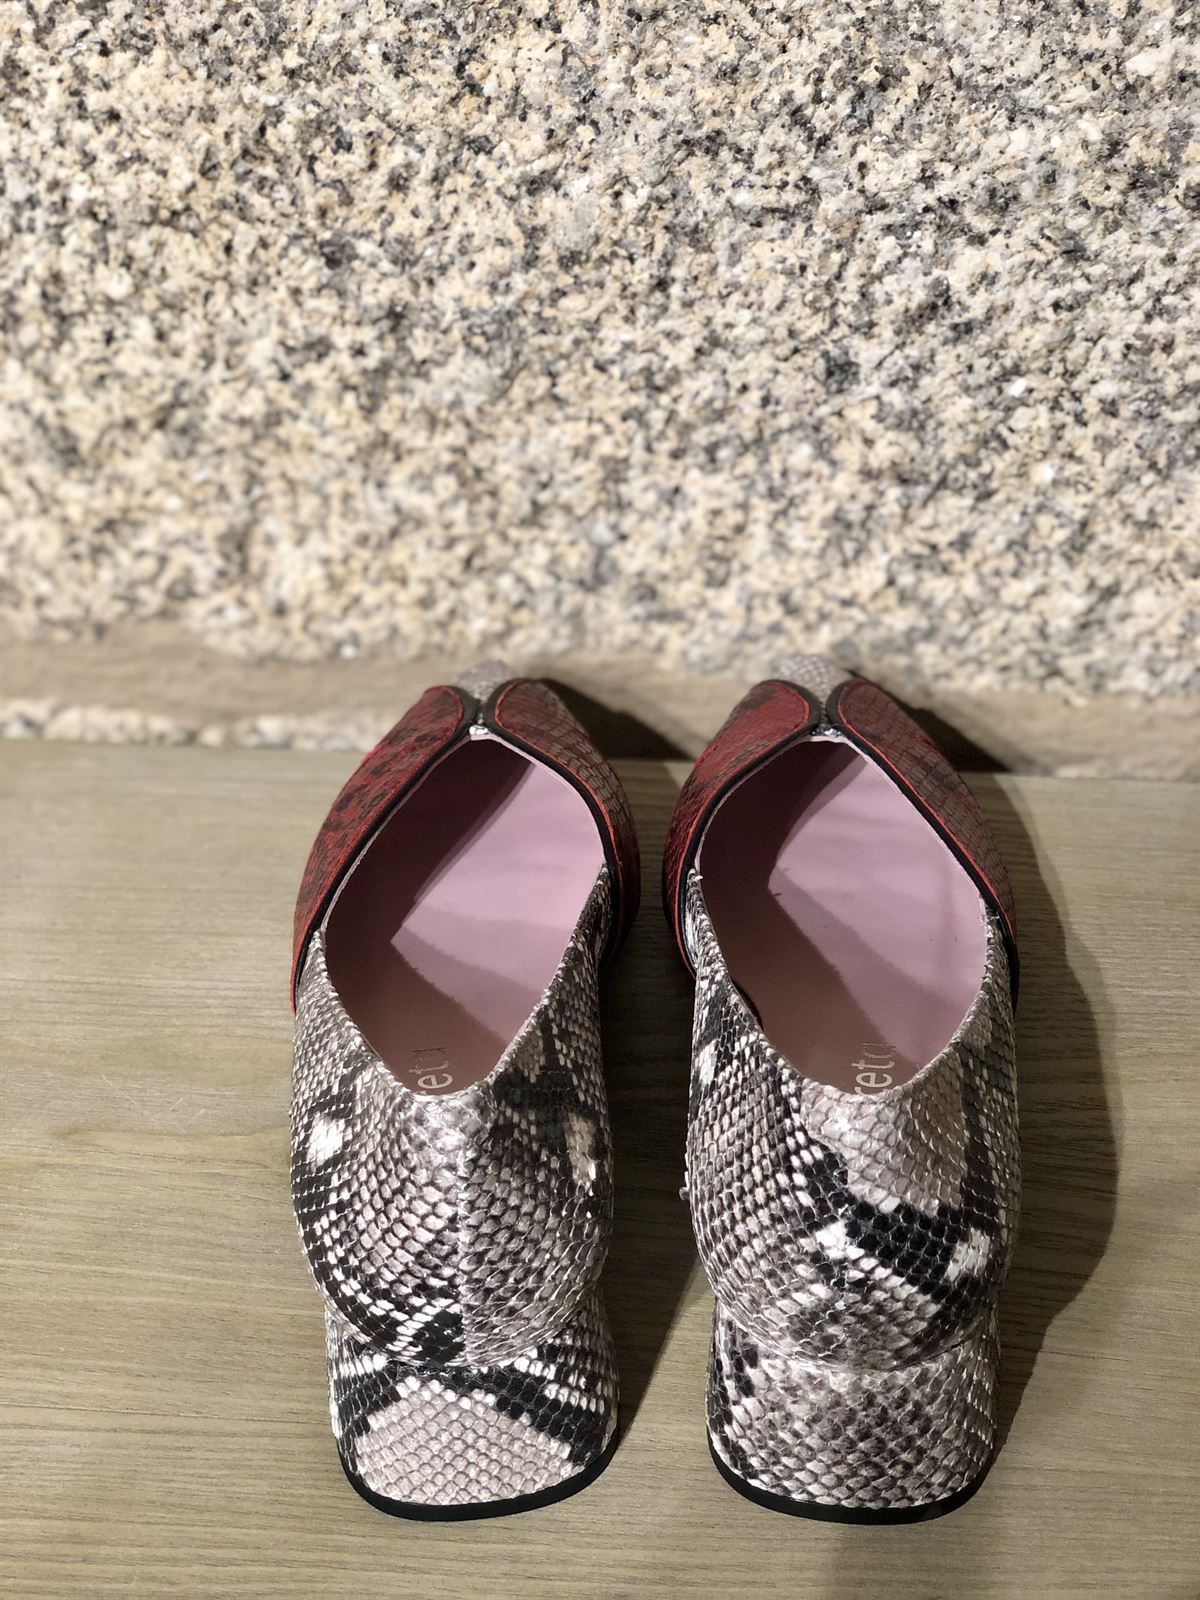 Zapato Angari print gris y rojos - Imagen 3